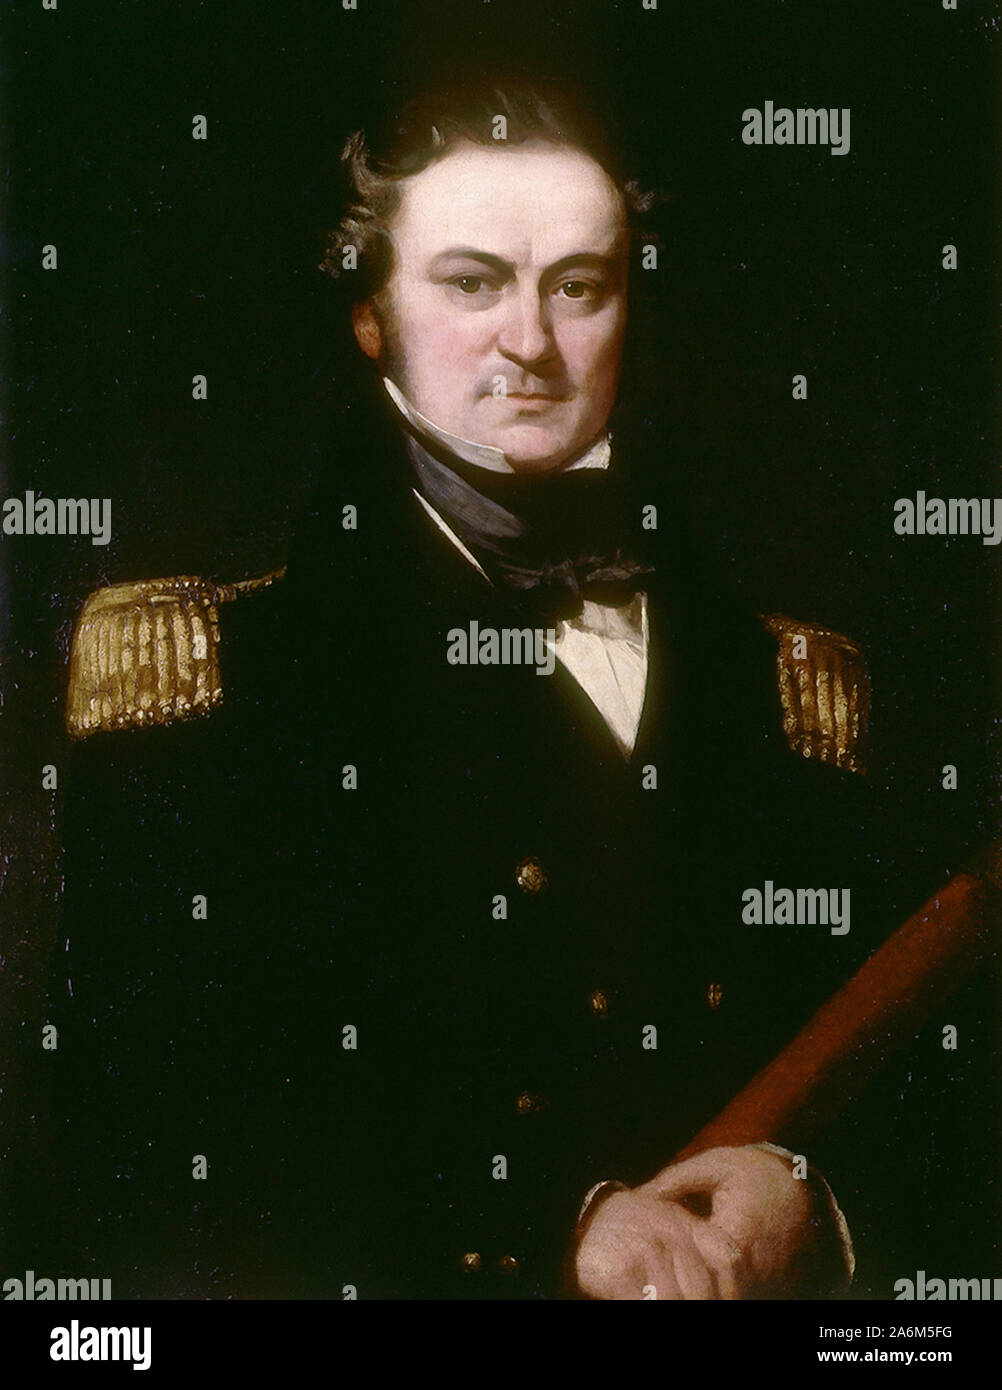 Il capitano William Edward Parry (1790-1855) Contrammiraglio Sir William Edward Parry, esploratore inglese dell'Artico che era noto per i suoi 1819 spedizione attraverso il canale Parry, probabilmente il maggior successo nella lunga ricerca per il passaggio a Nord Ovest. Foto Stock